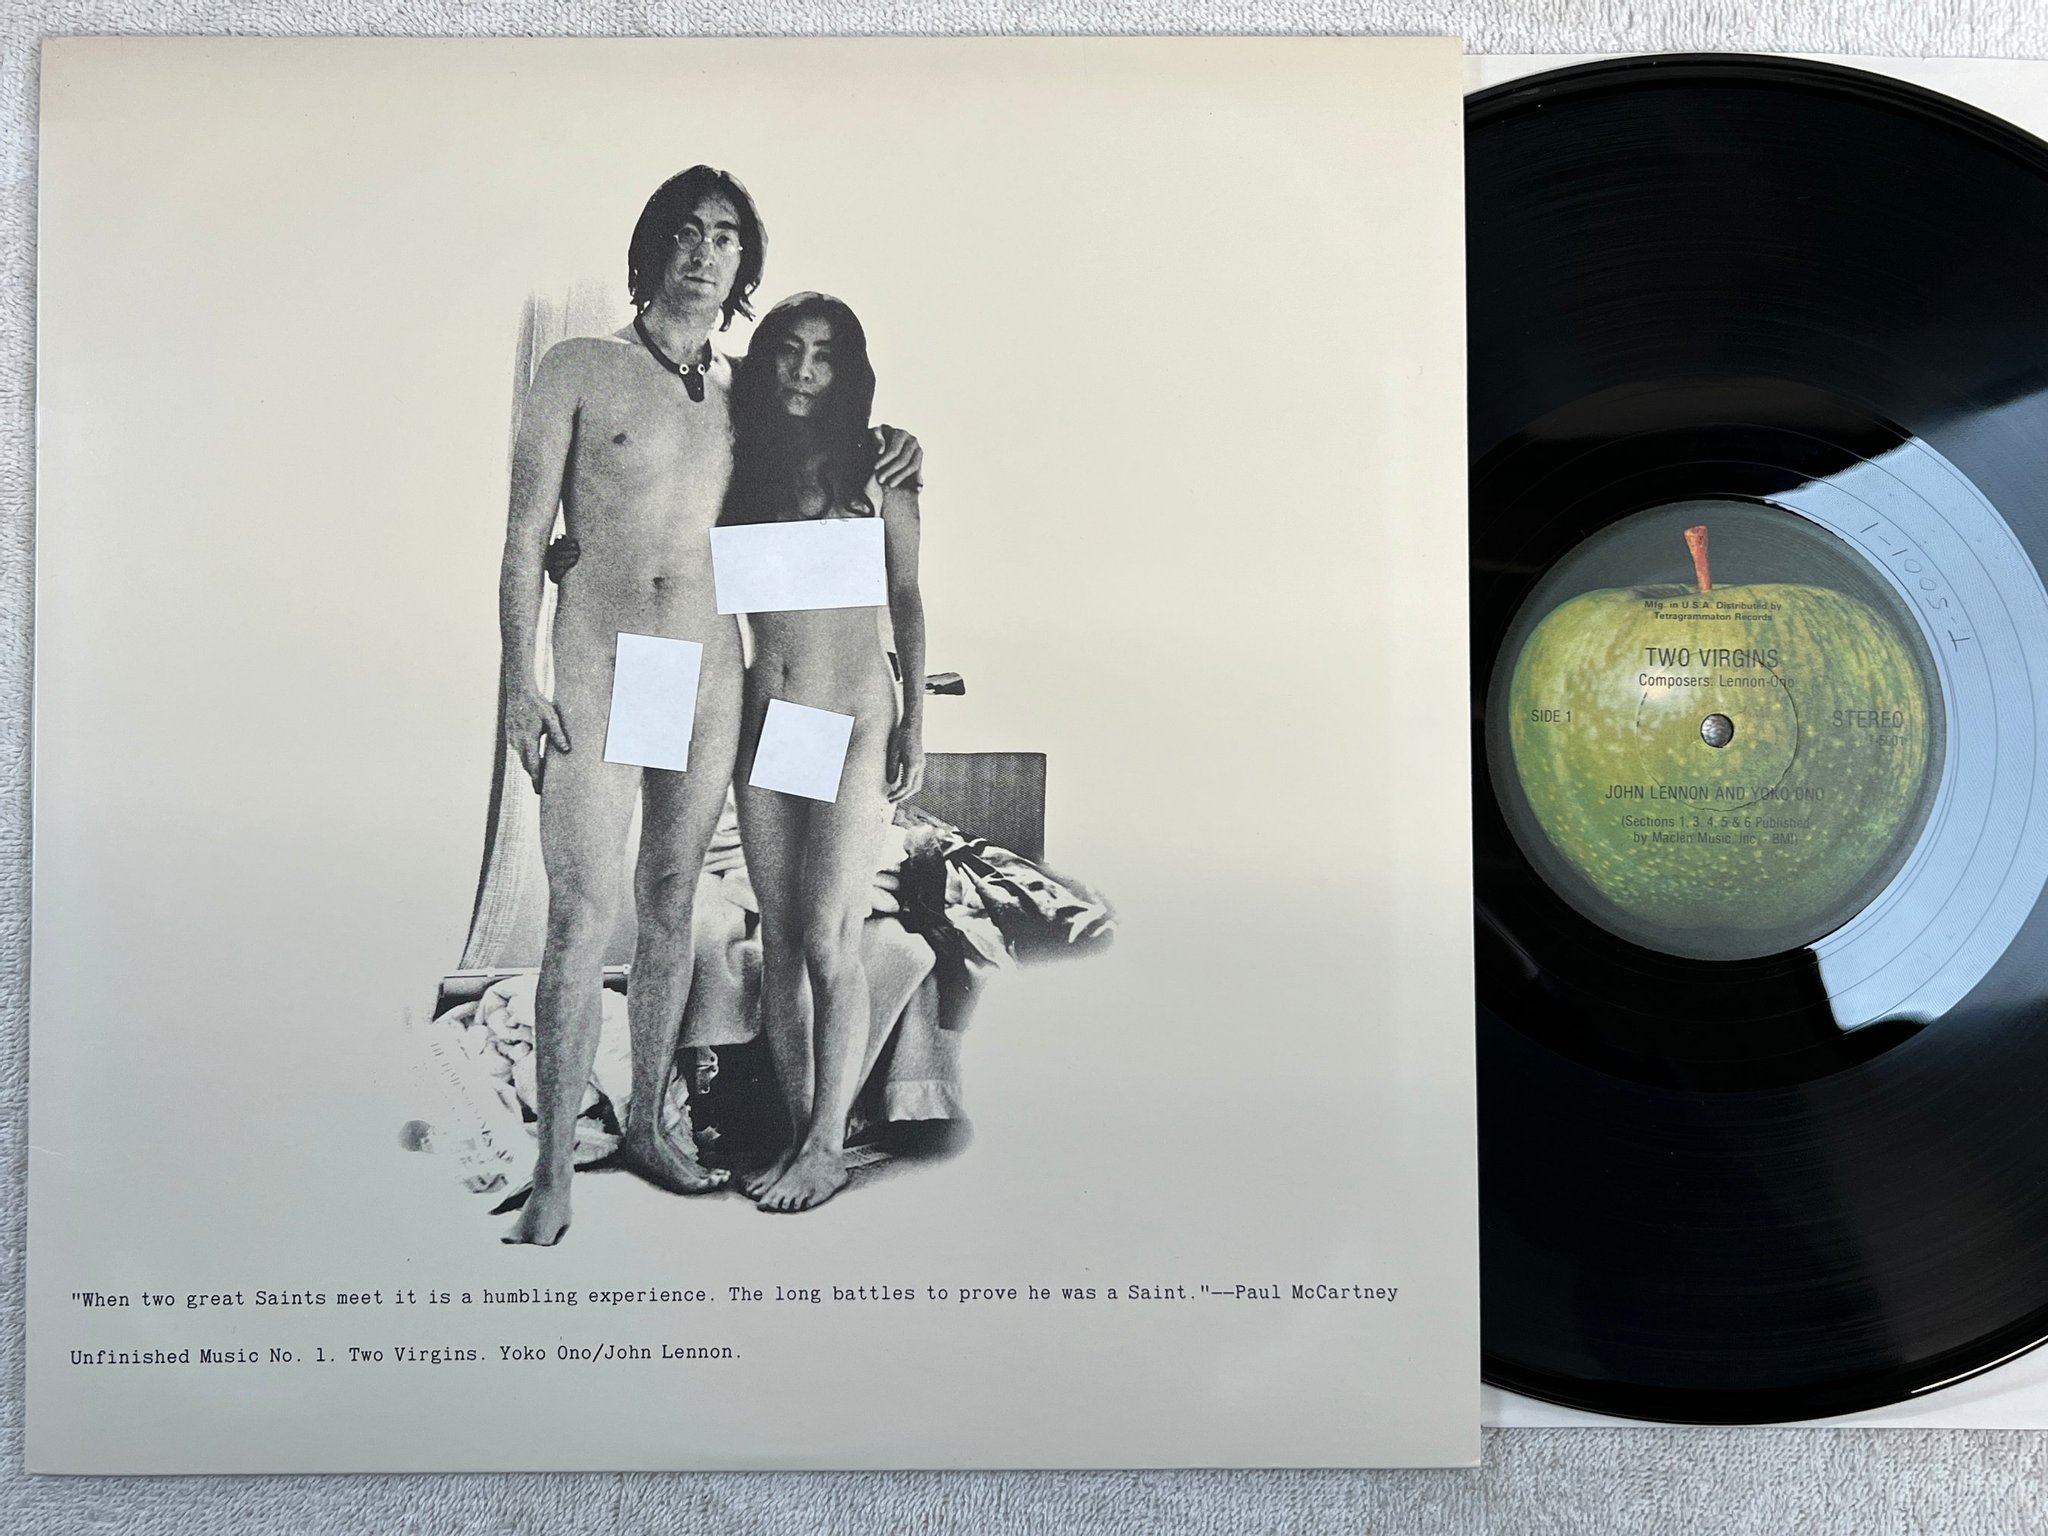 Omslagsbild för skivan JOHN LENNON & YOKO ONO two virgins LP APPLE T-5001